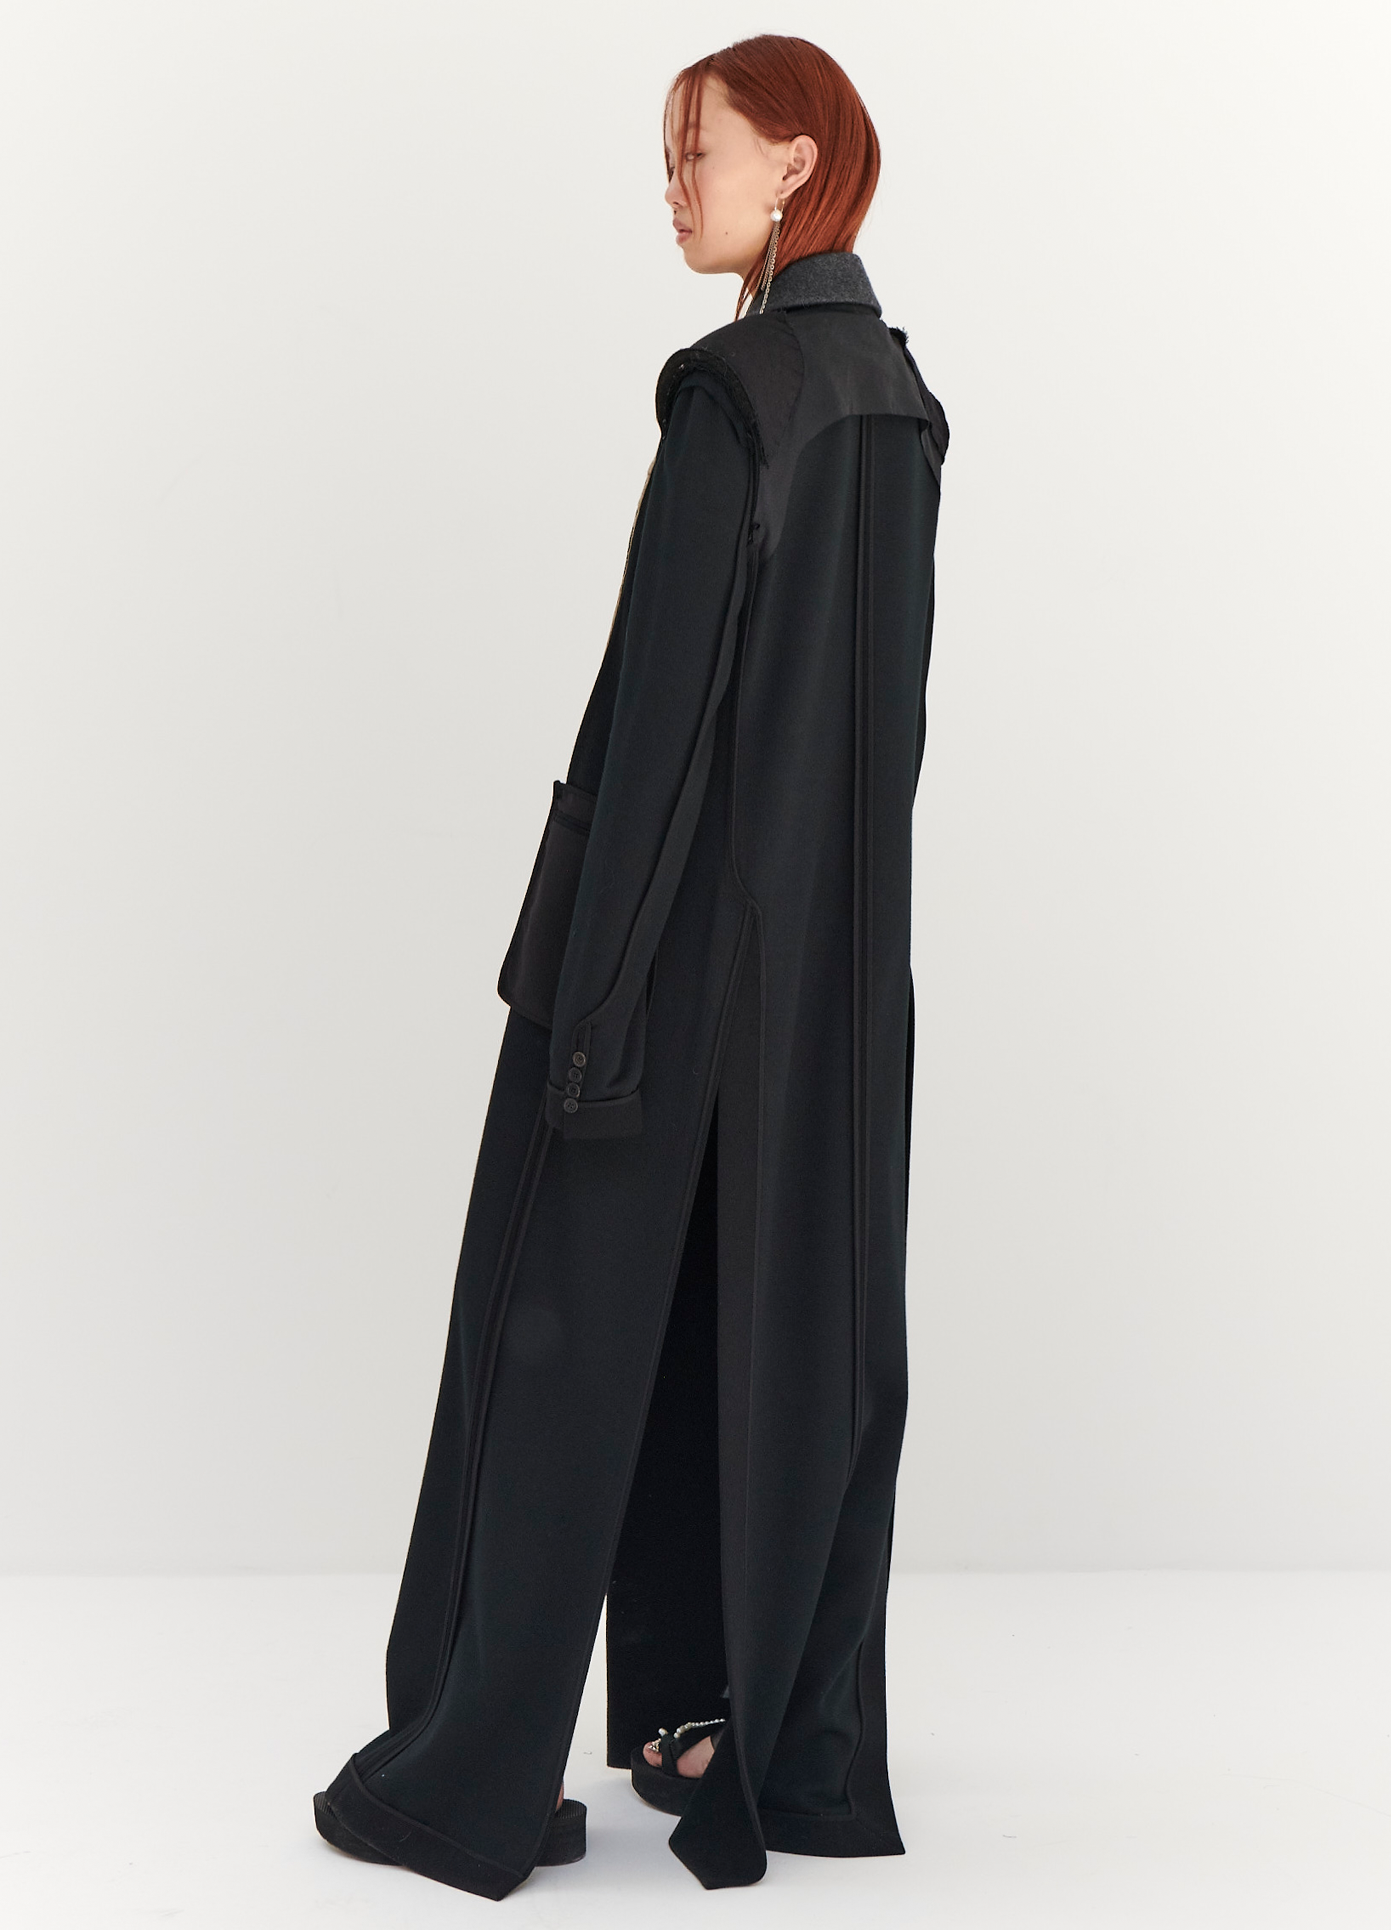 MONSE Floor Length Reversed Coat in Black on model full back side view